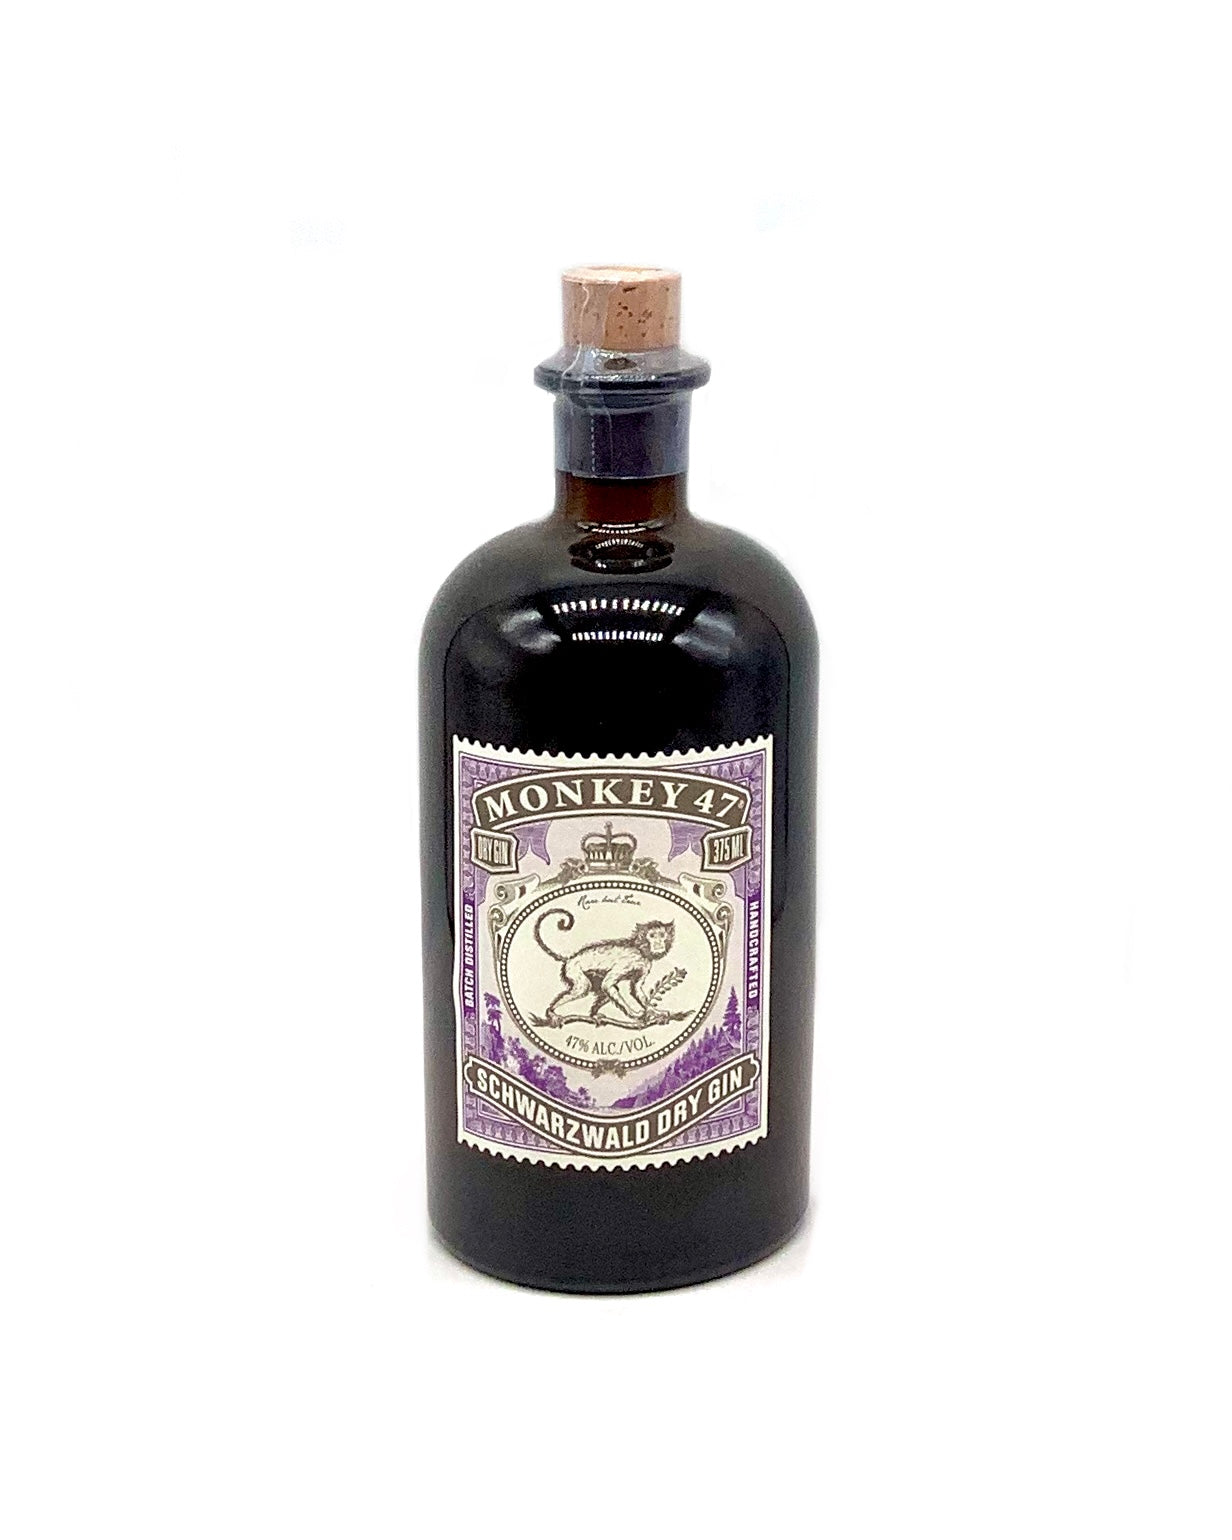 Monkey 47 Schwarzwald Dry Gin 375ml